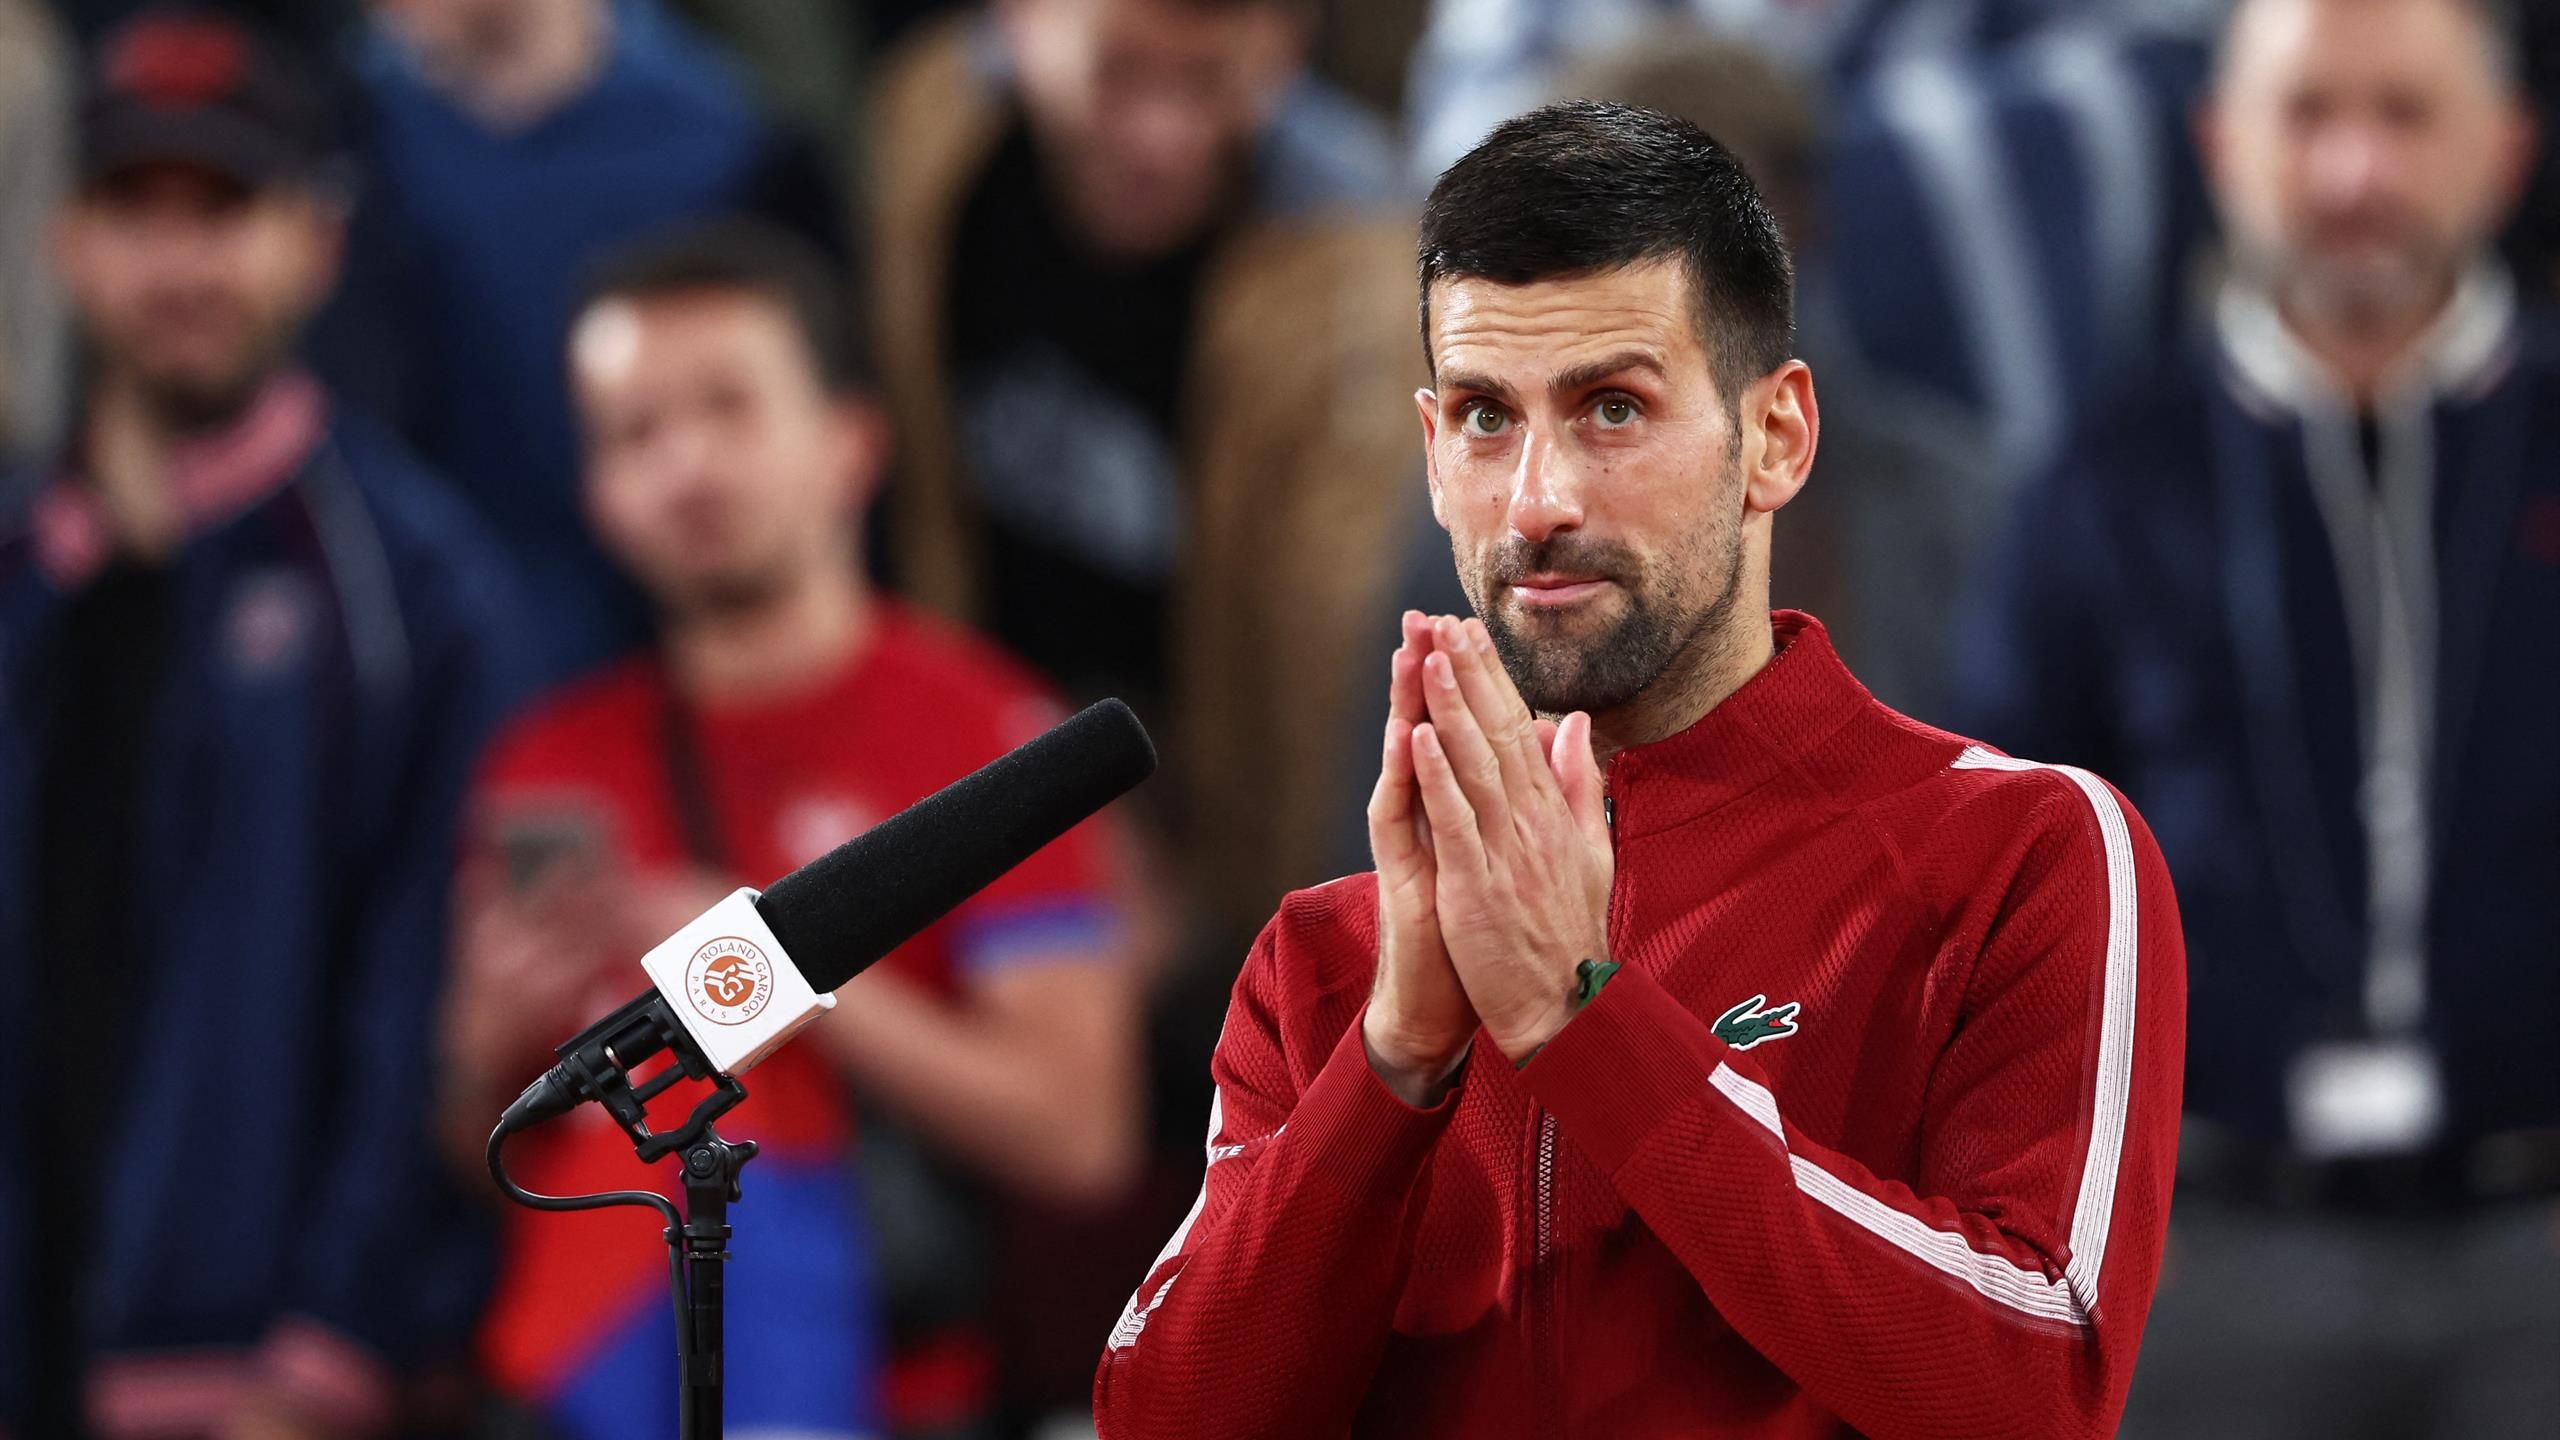 'Ten un poco de comprensión' - Djokovic reacciona ante la violación del tiempo del árbitro